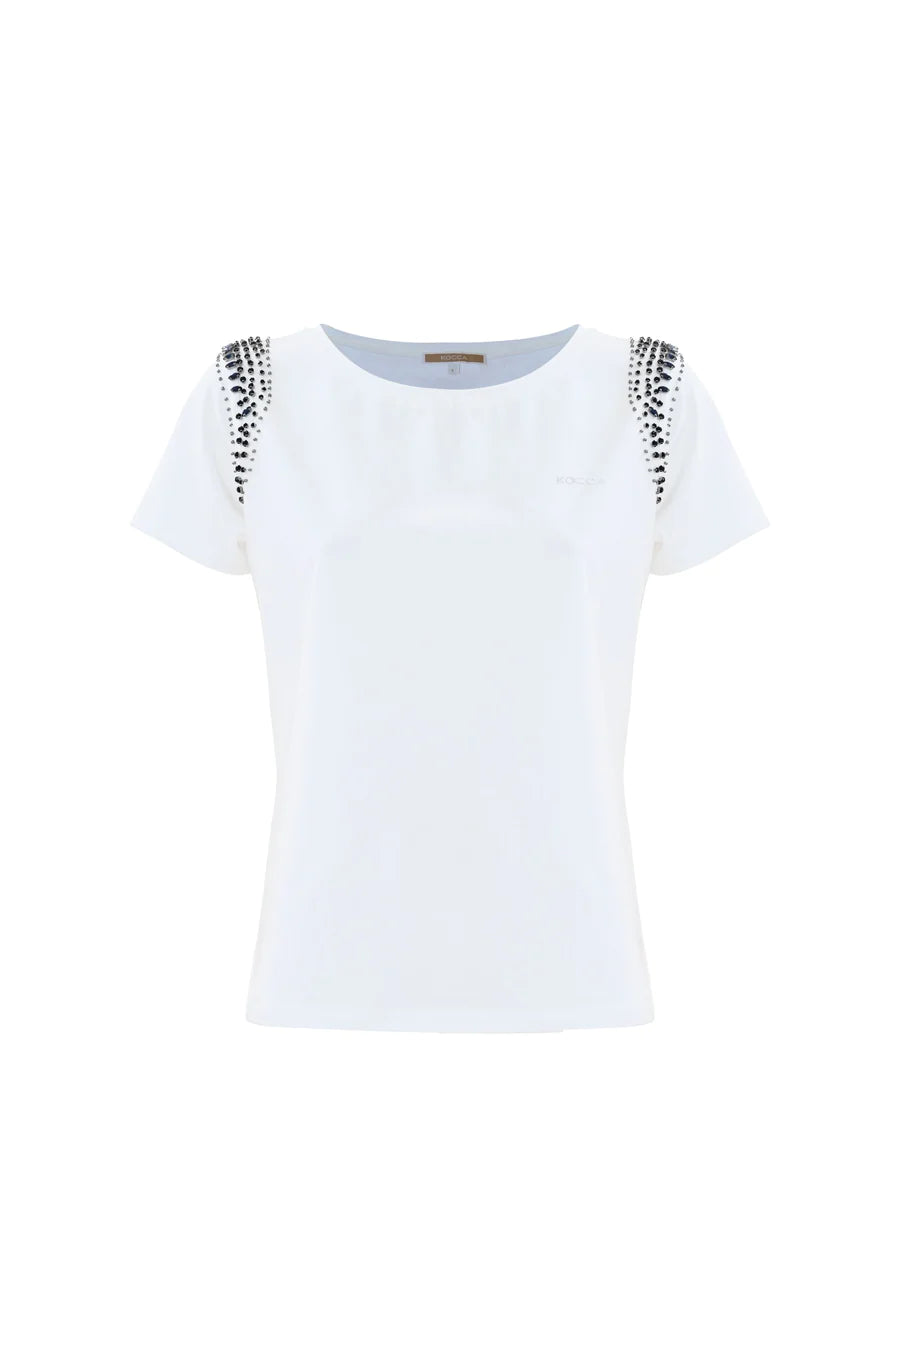 Kocca t-shirt bianca con pietre dettaglio